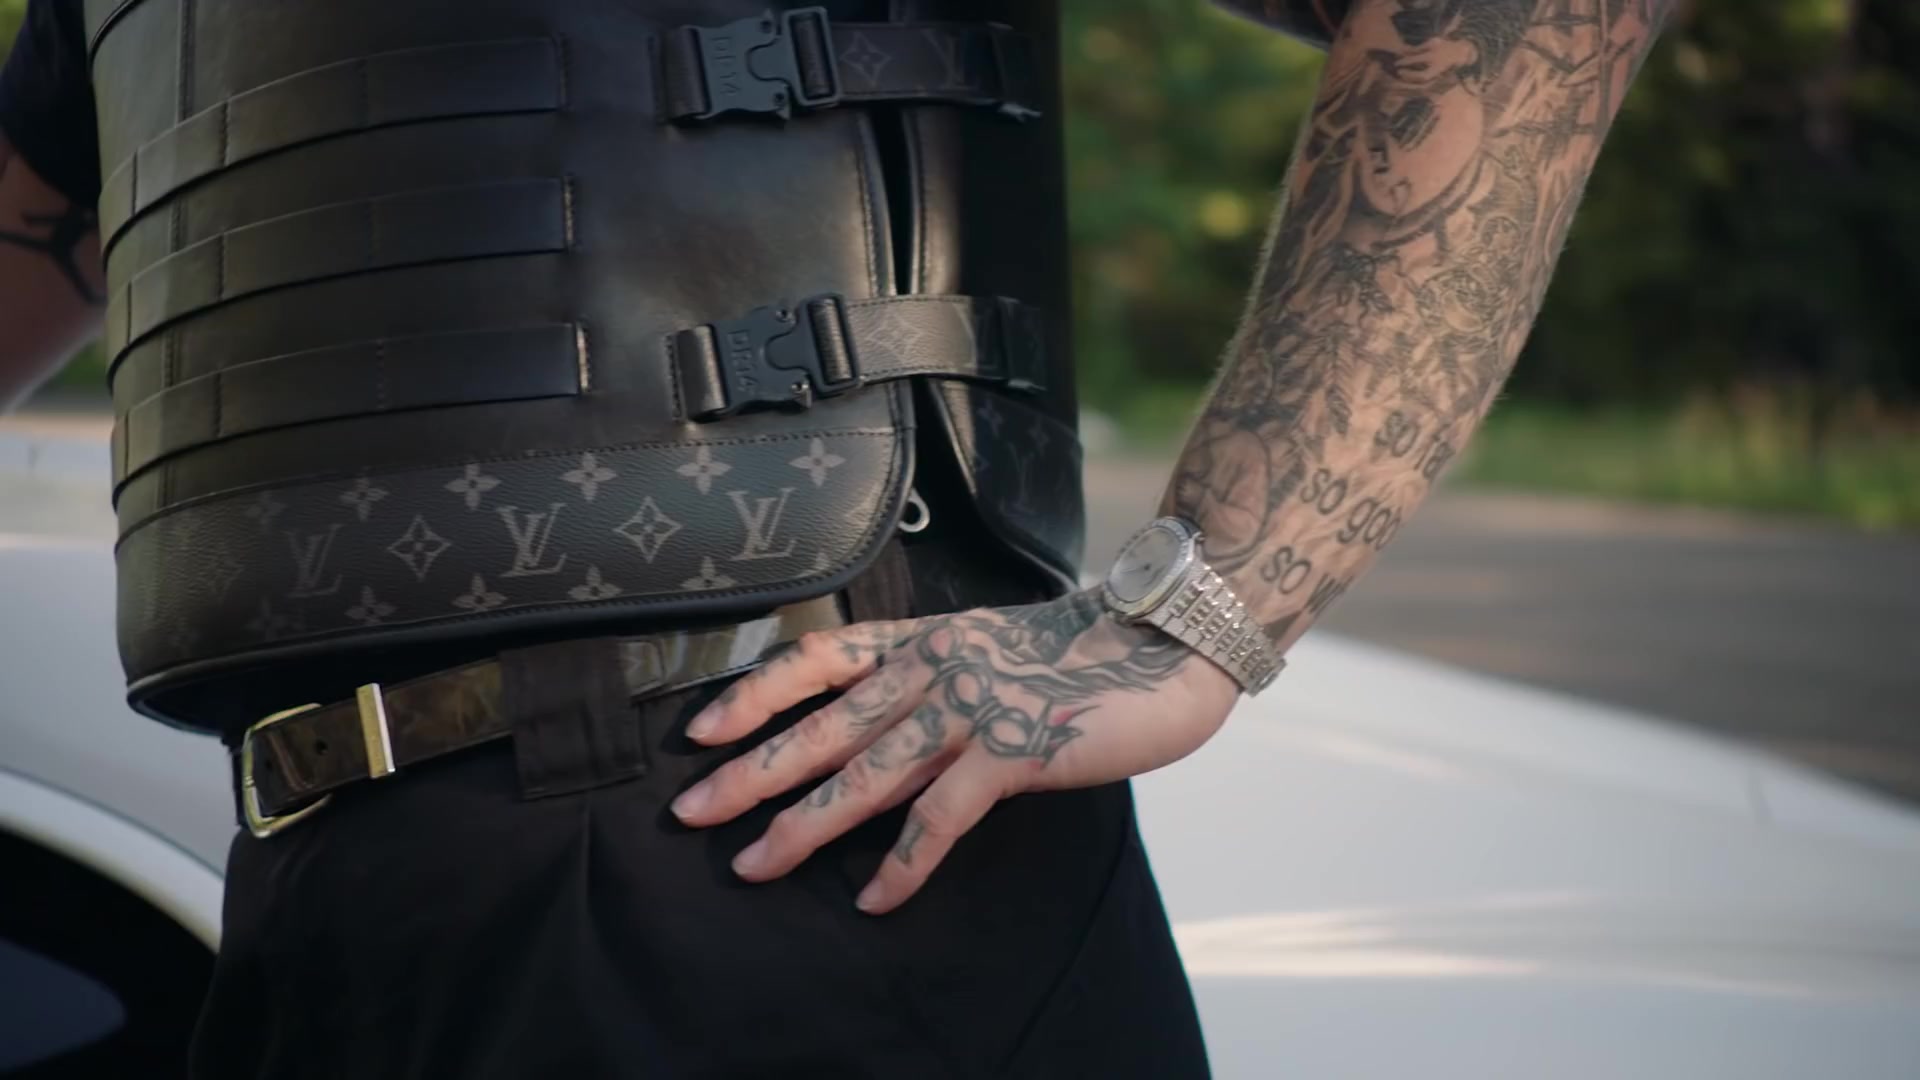 Louis Vuitton bullet proof vest｜TikTok Search